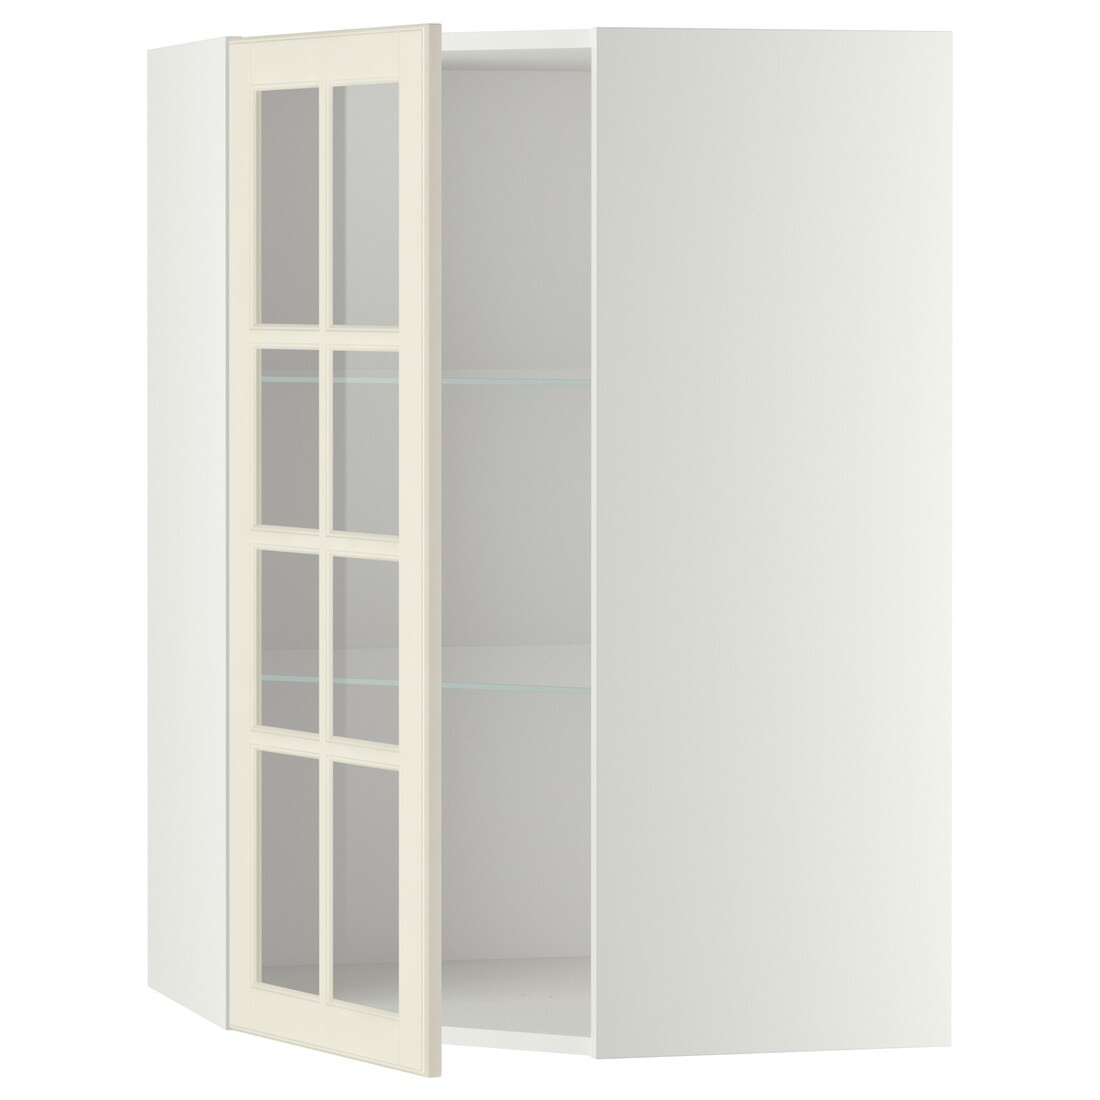 METOD МЕТОД Угловой настенный шкаф с полками / стеклянная дверь, белый / Bodbyn кремовый, 68x100 см